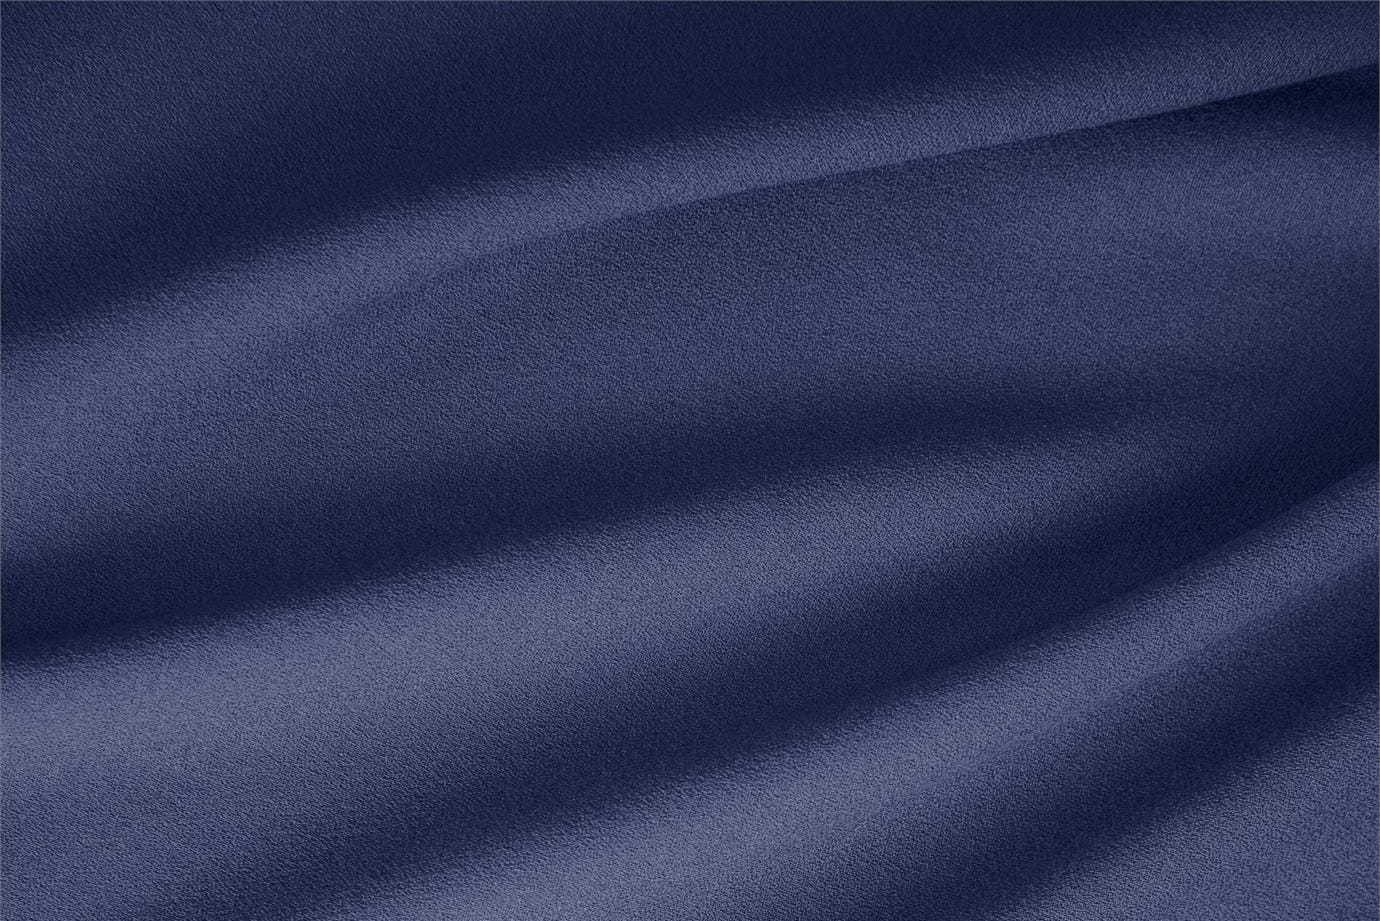 Tissu Laine Stretch Bleu océan en Laine, Polyester, Stretch pour vêtements